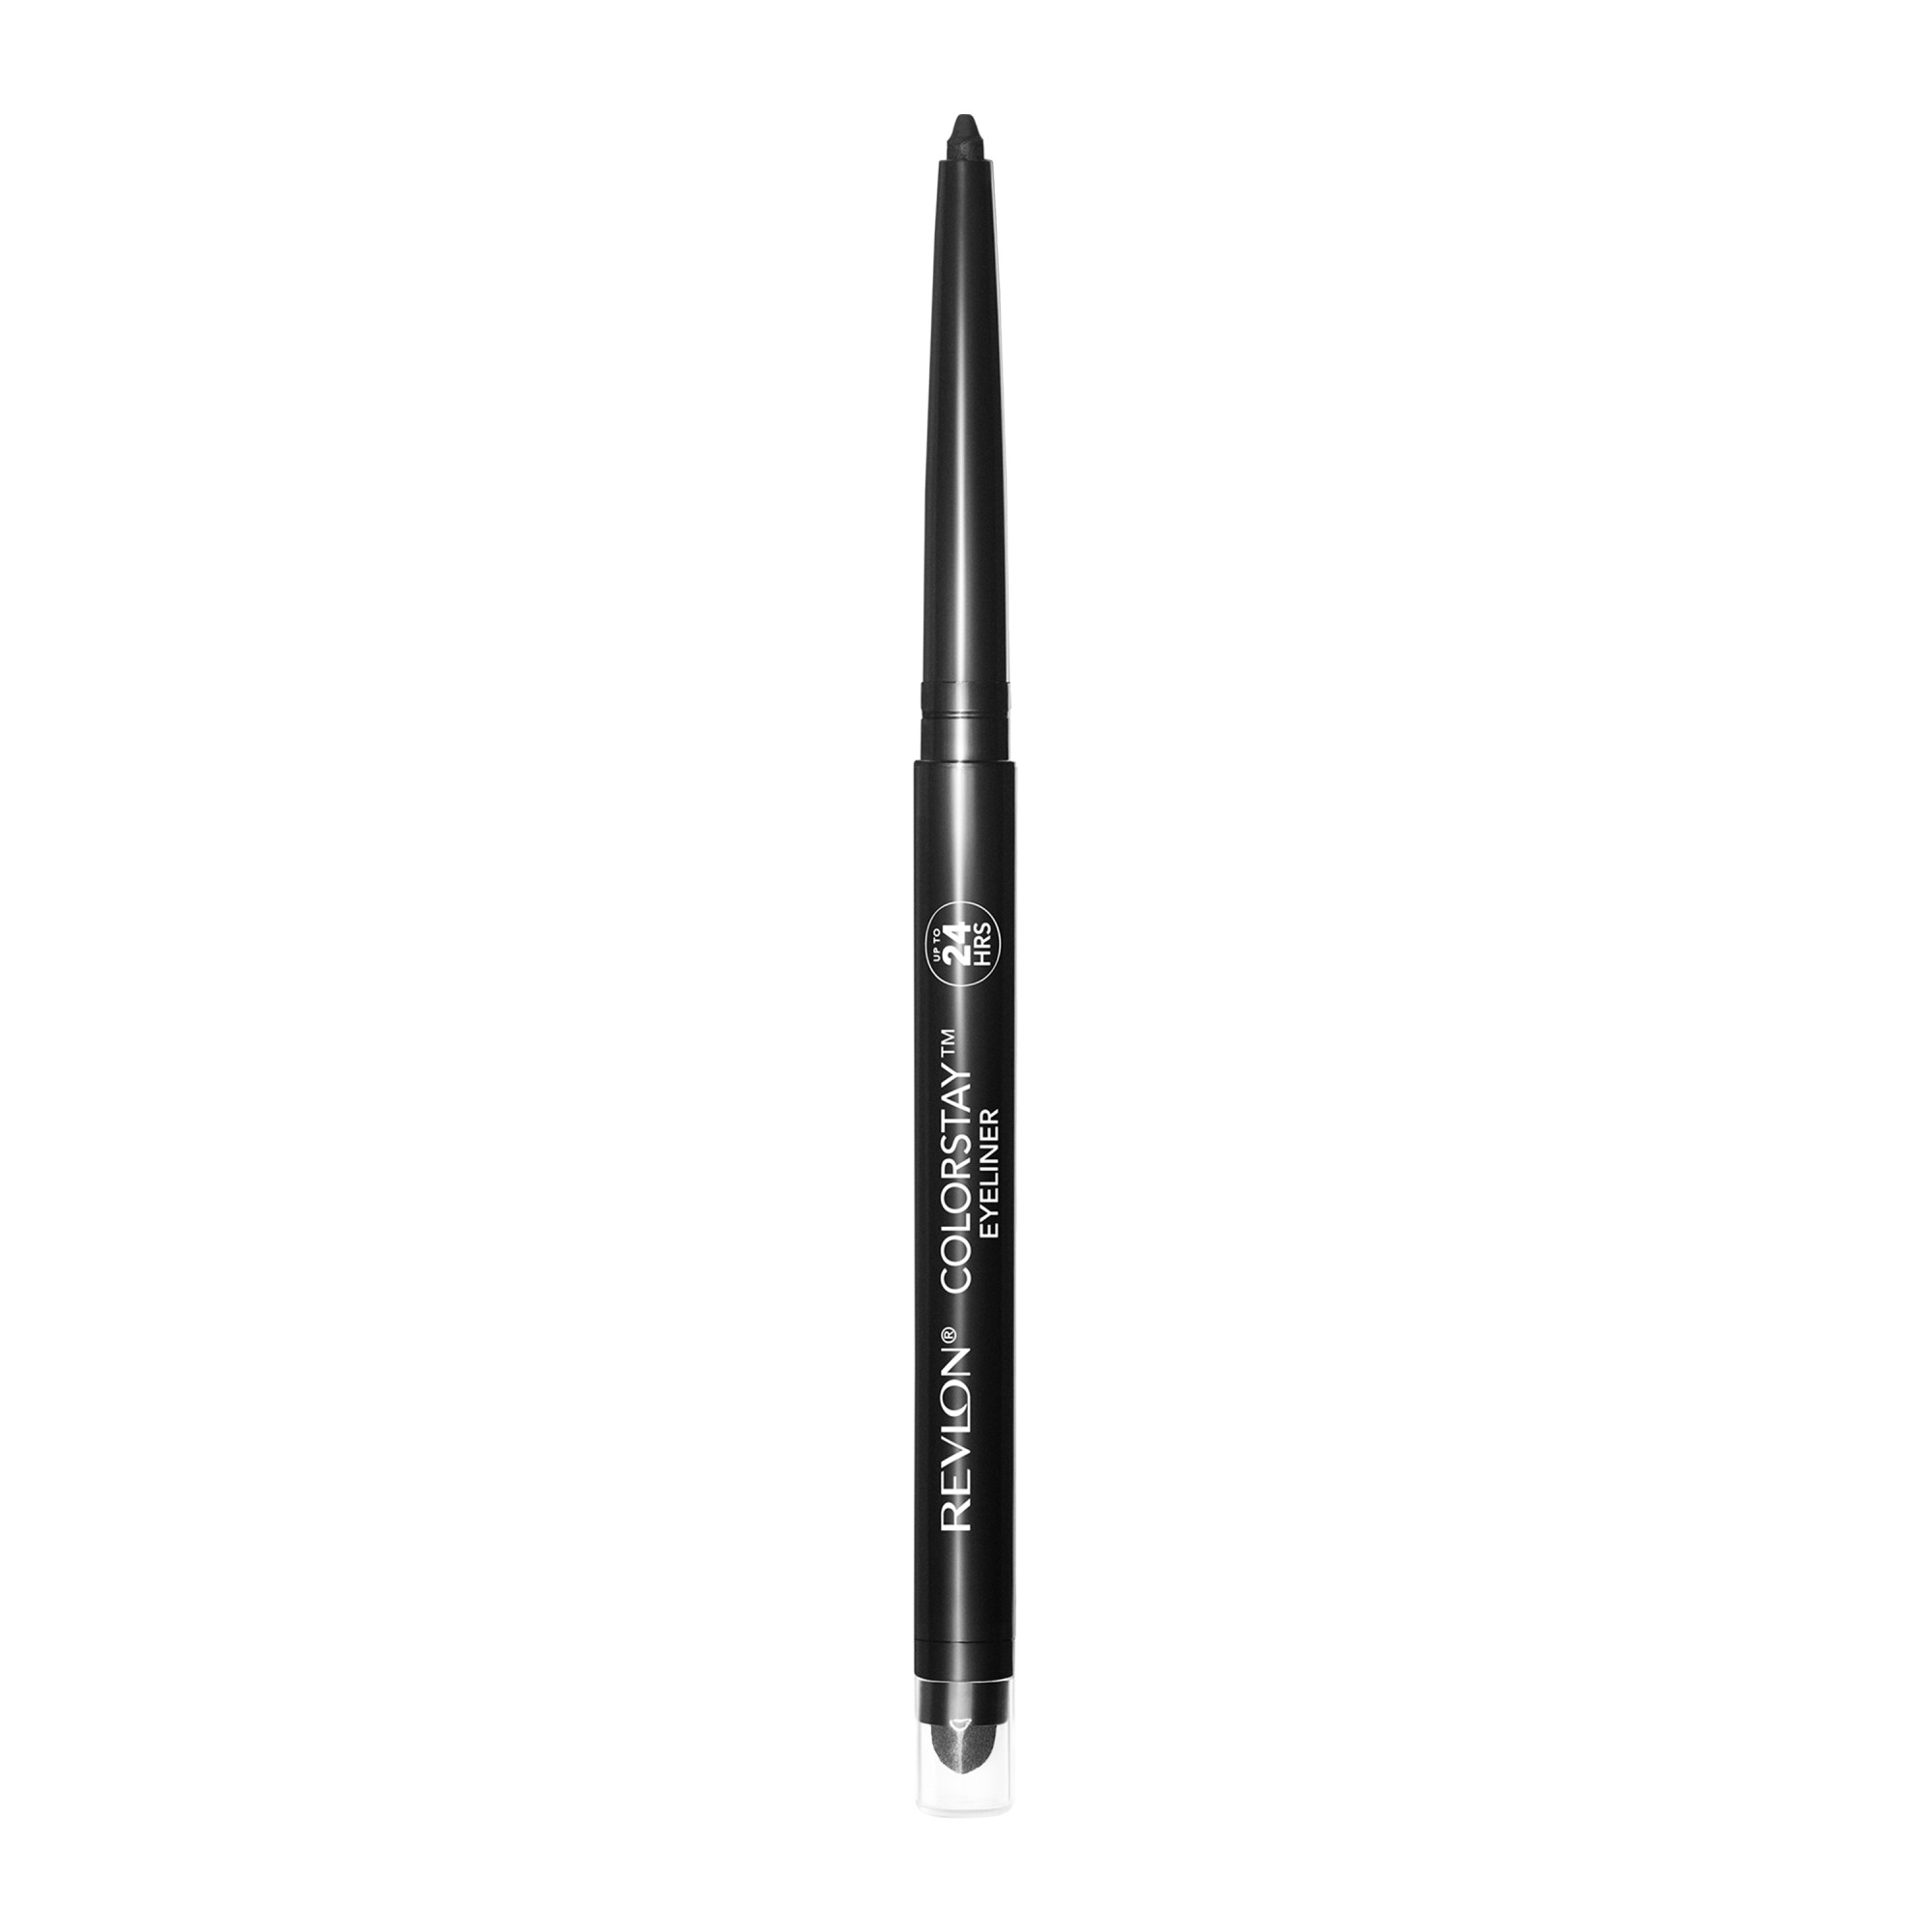 Revlon ColorStay Waterproof Eyeliner Pencil, 24HR Wear, Built-in Sharpener, 201 Black, 0.01 oz - image 3 of 9